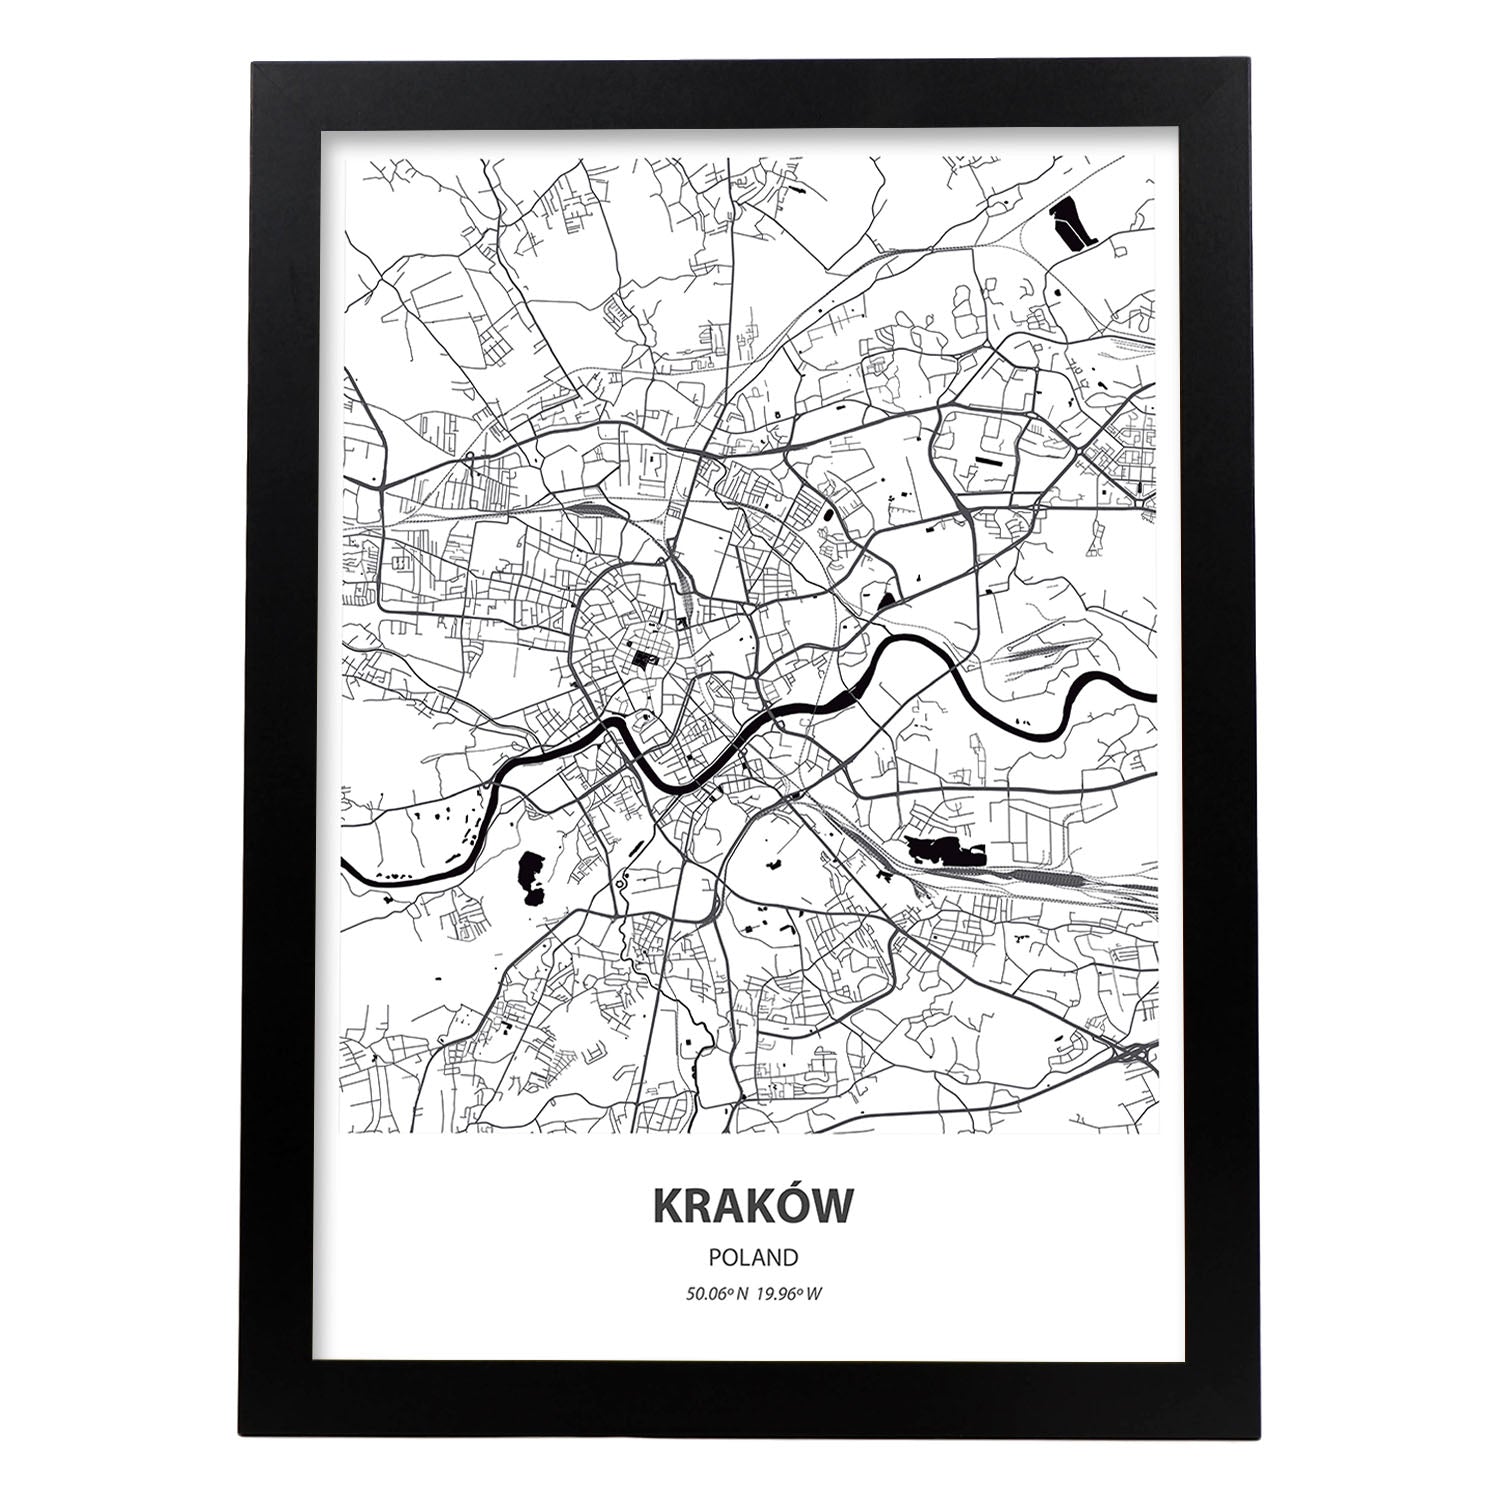 Poster con mapa de Krakow - Polonia. Láminas de ciudades de Europa con mares y ríos en color negro.-Artwork-Nacnic-A4-Marco Negro-Nacnic Estudio SL